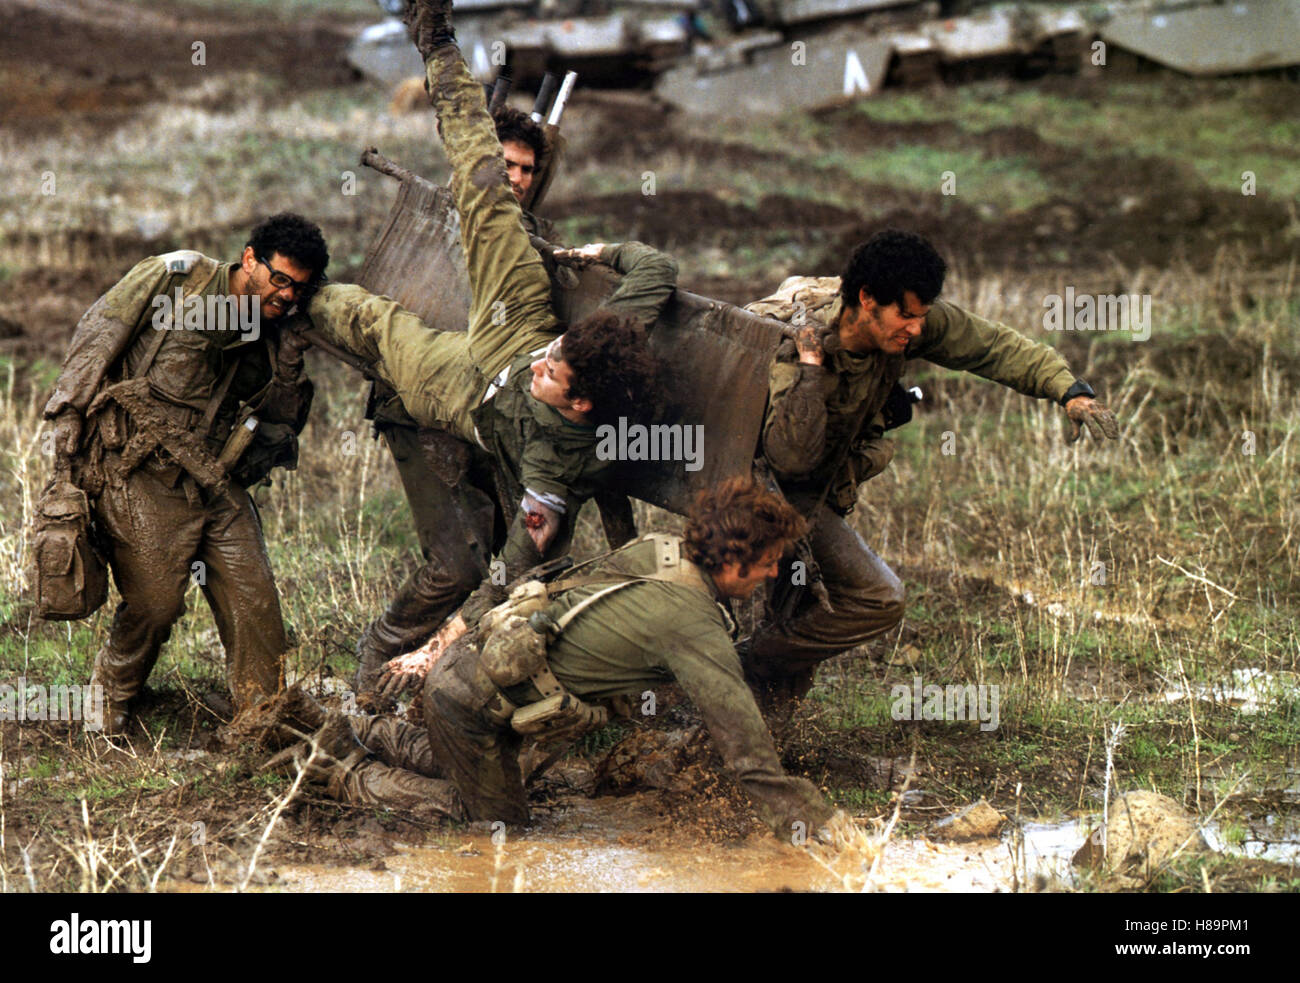 Am Tag von Kippur, (KIPPOUR) F- ISR 2000, Regie: Amos Gitai, URI KLAUZNER, YORAM HATTAB, LIRON LEVO, TOMER RUSSO, Key: Soldaten, Sanitäter, Bahre Stock Photo